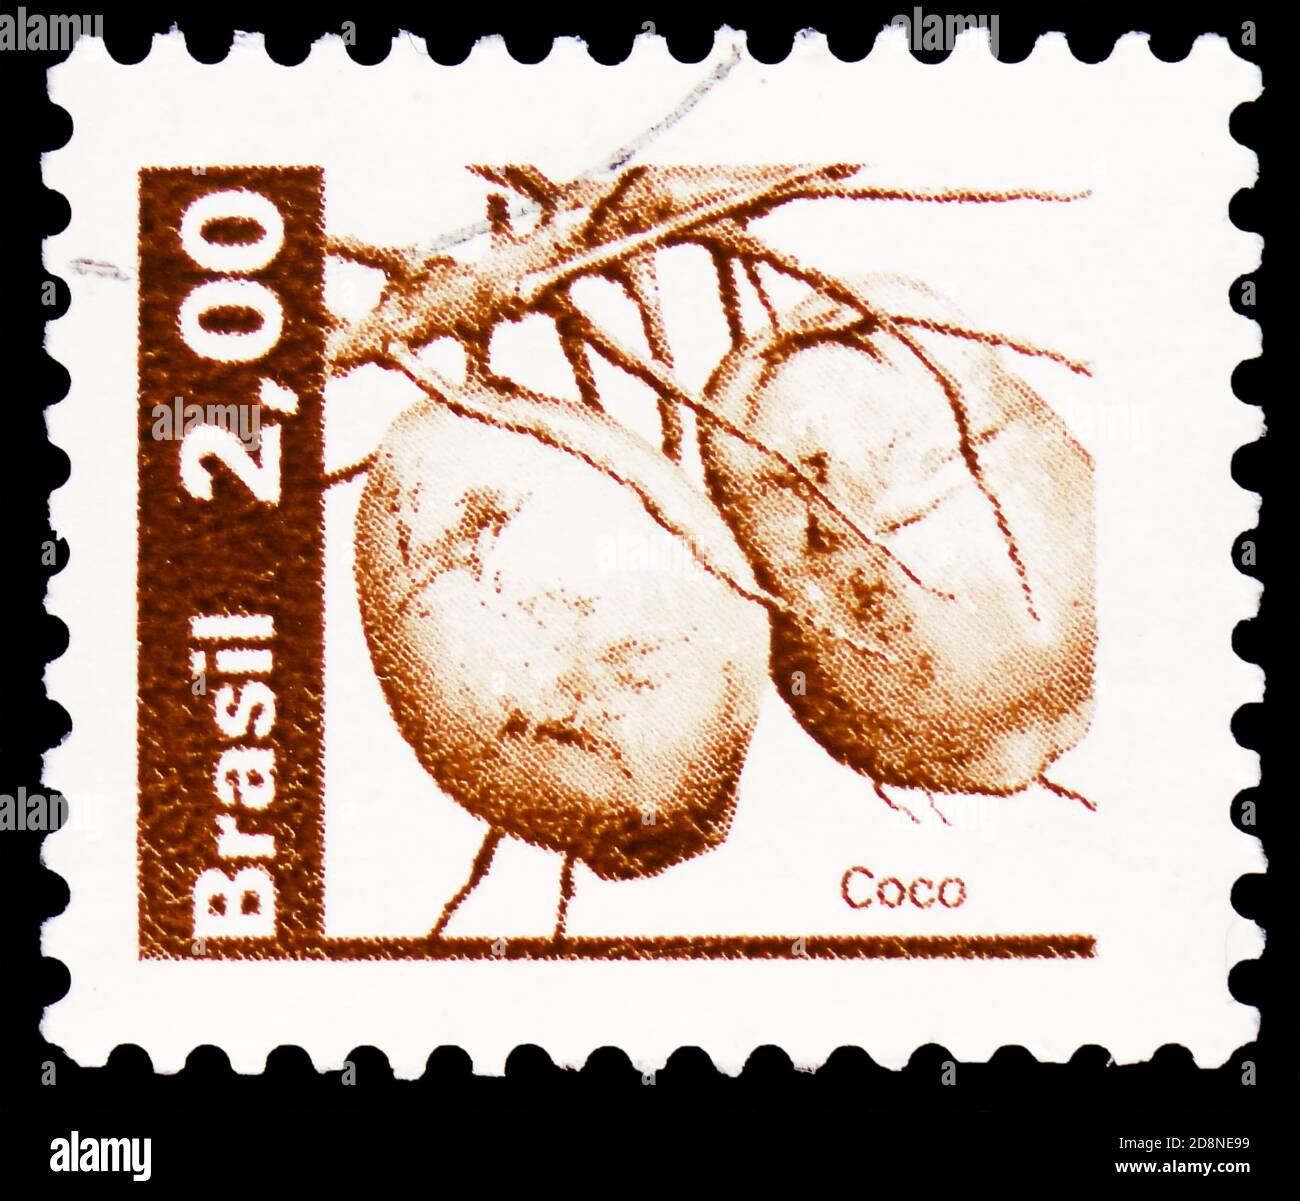 MOSKAU, RUSSLAND - 8. OKTOBER 2020: Briefmarke gedruckt in Brasilien zeigt Kokosnuss, Natural Economy Resources Serie, um 1982 Stockfoto